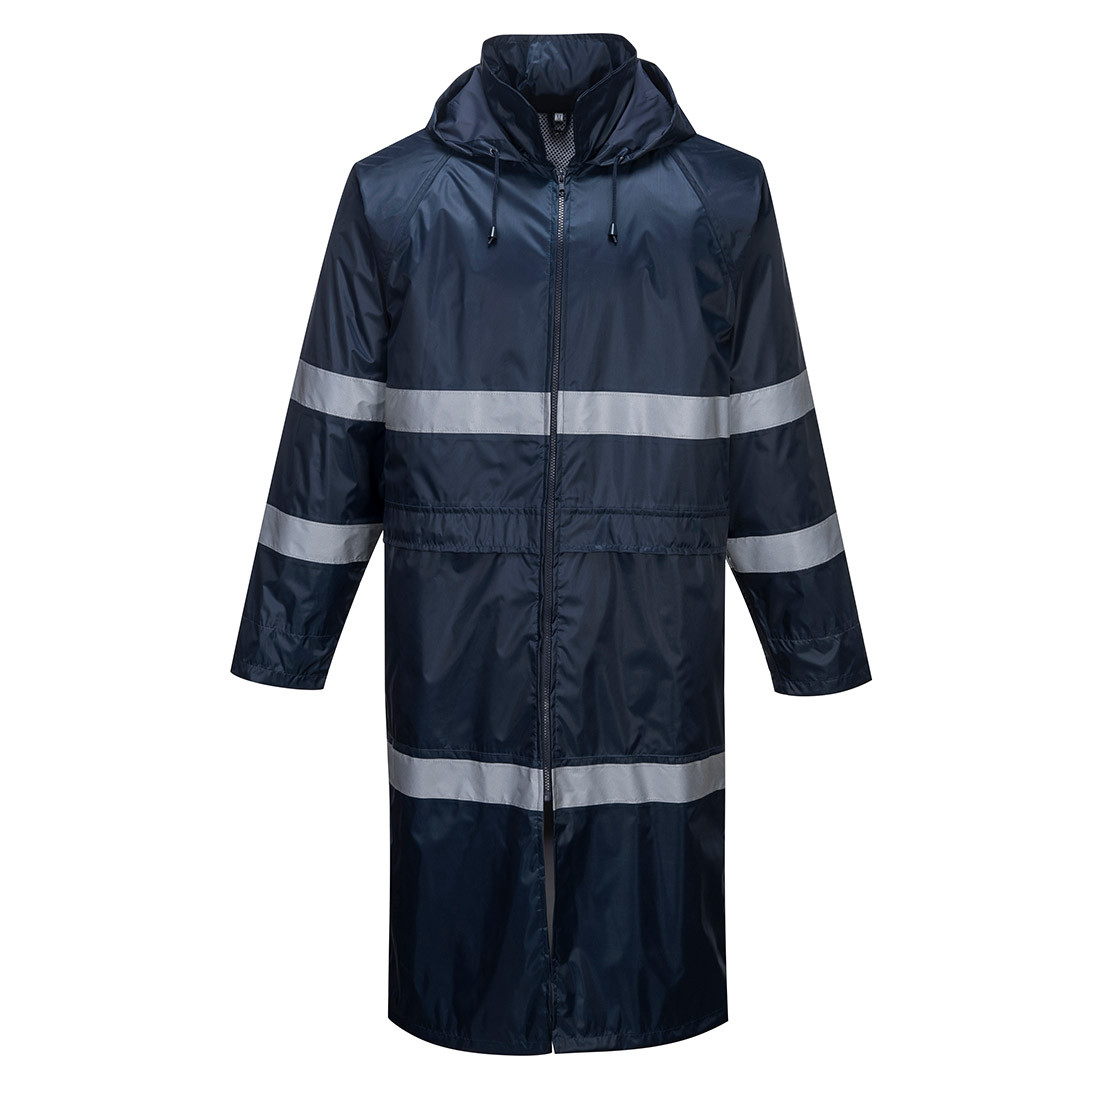 Iona Rain Coat Classic - Les vêtements de protection